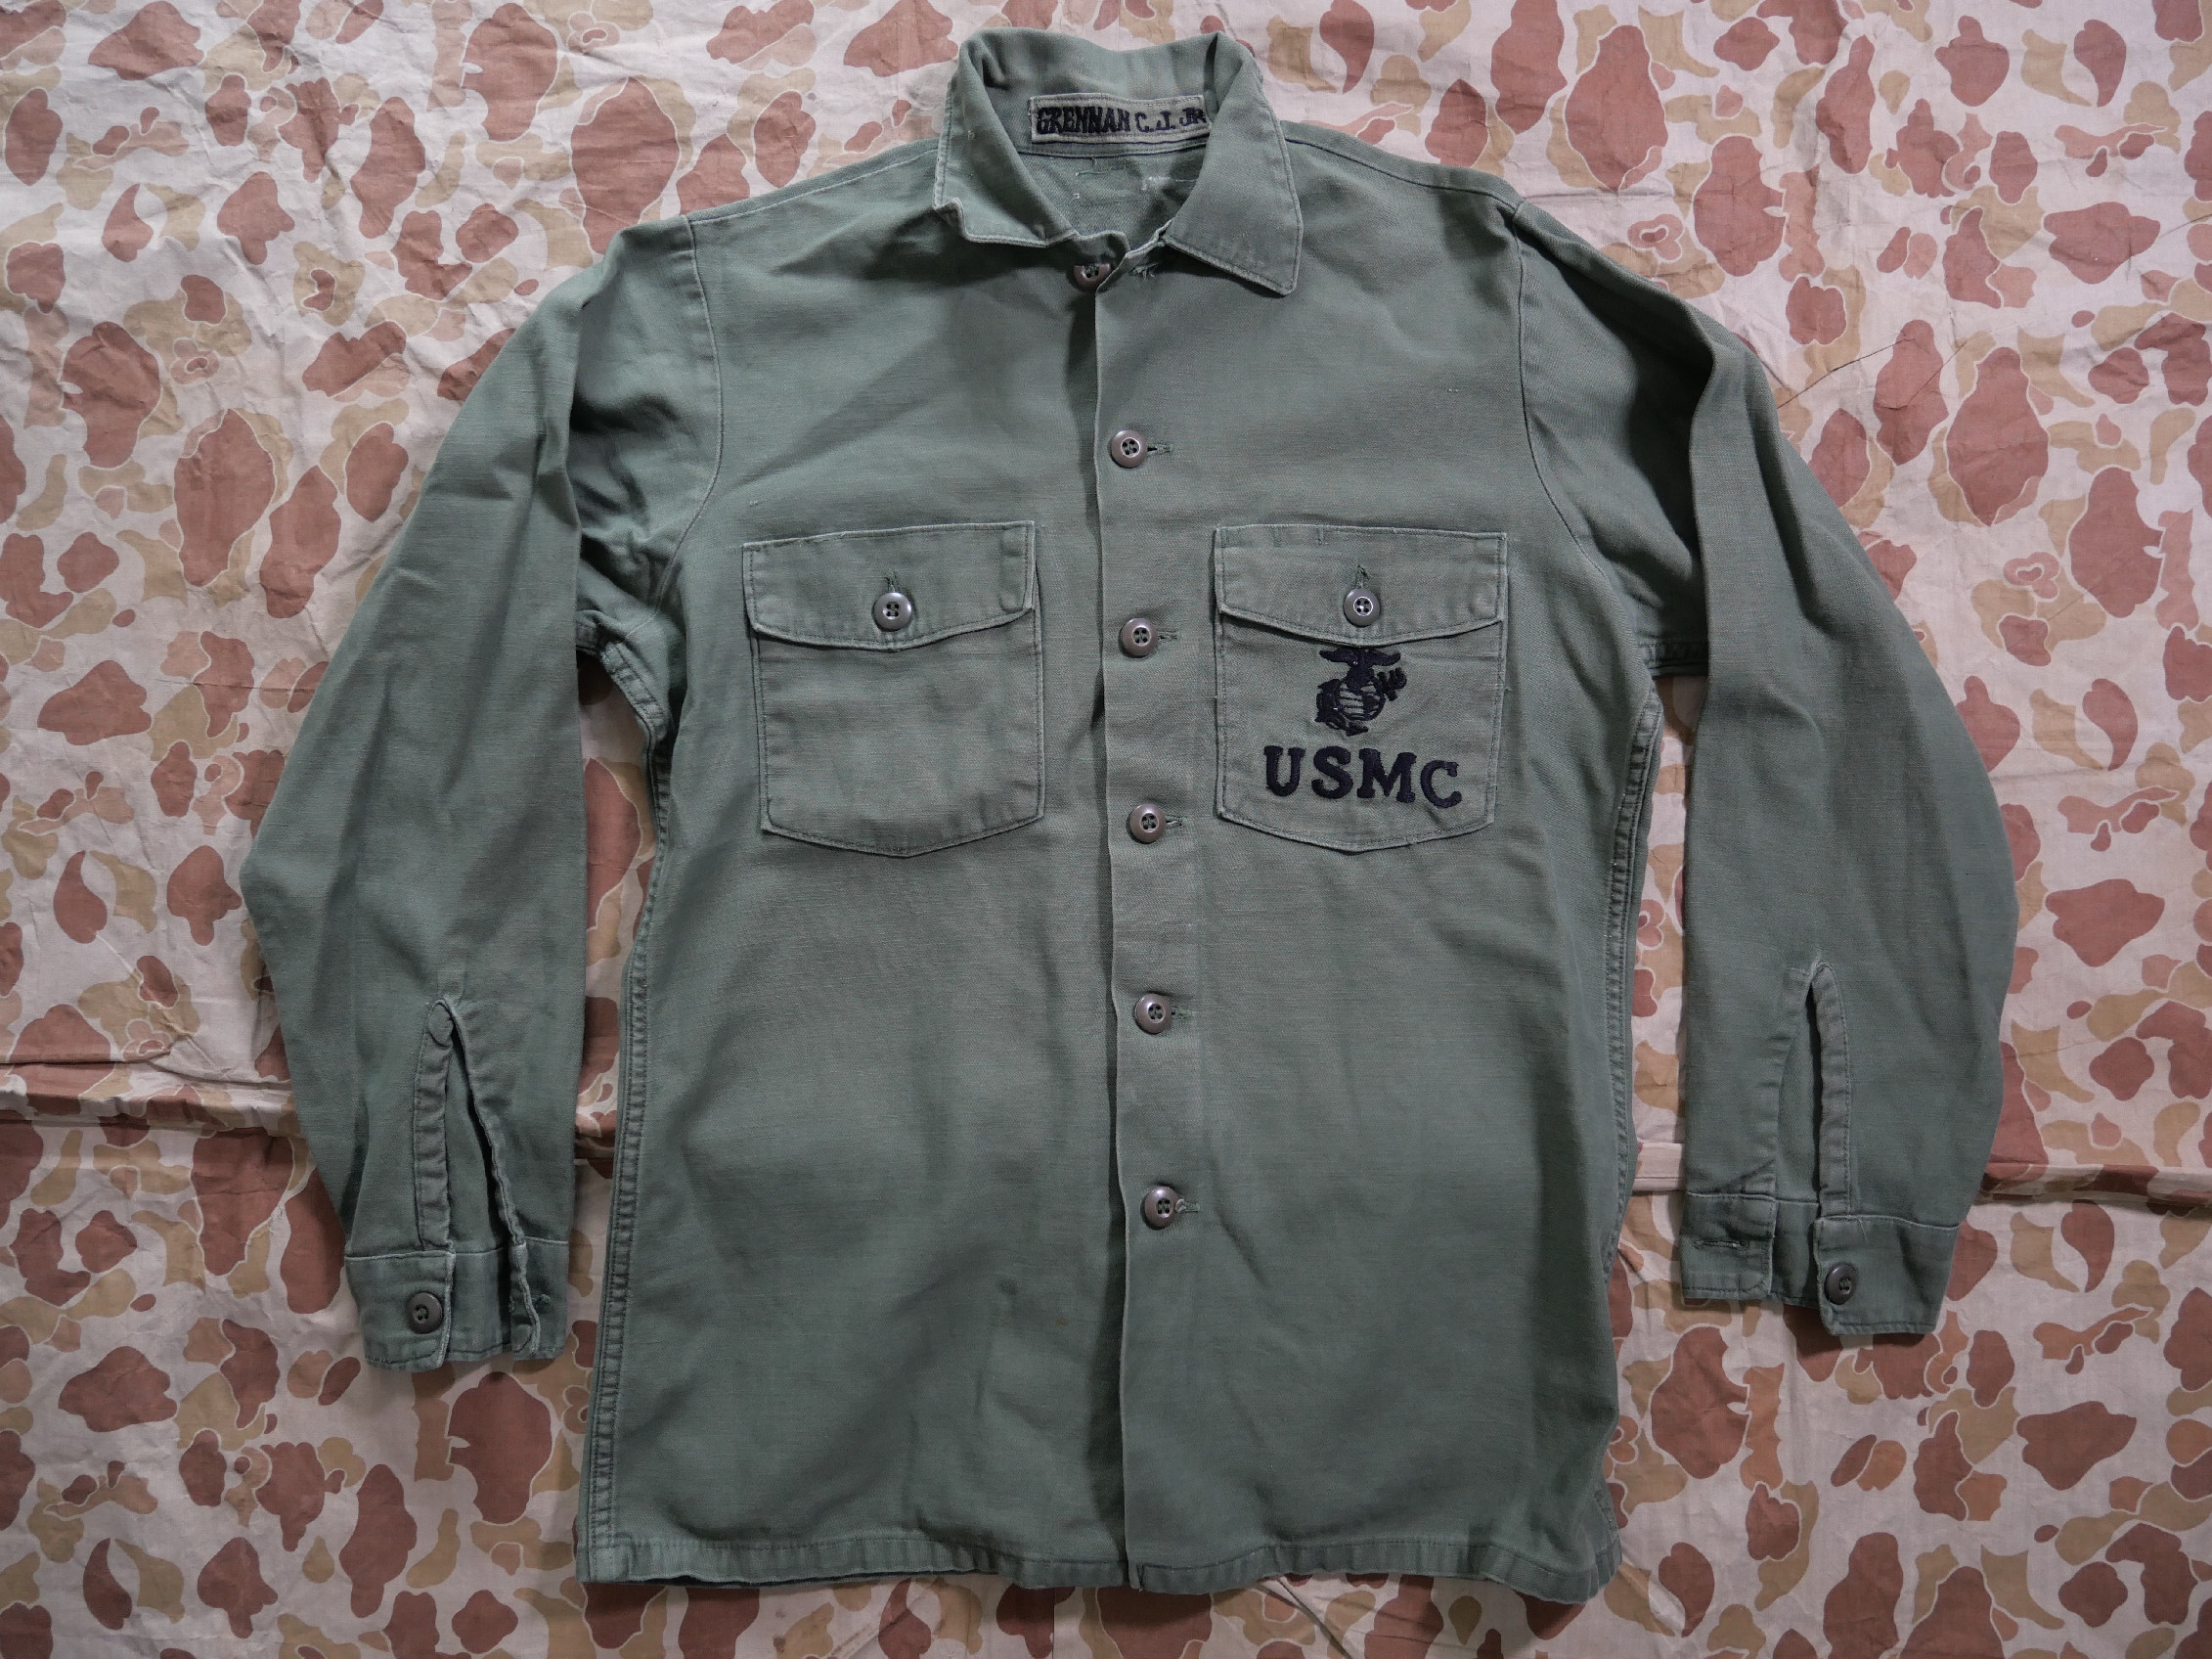 USMC košile Okinawa made